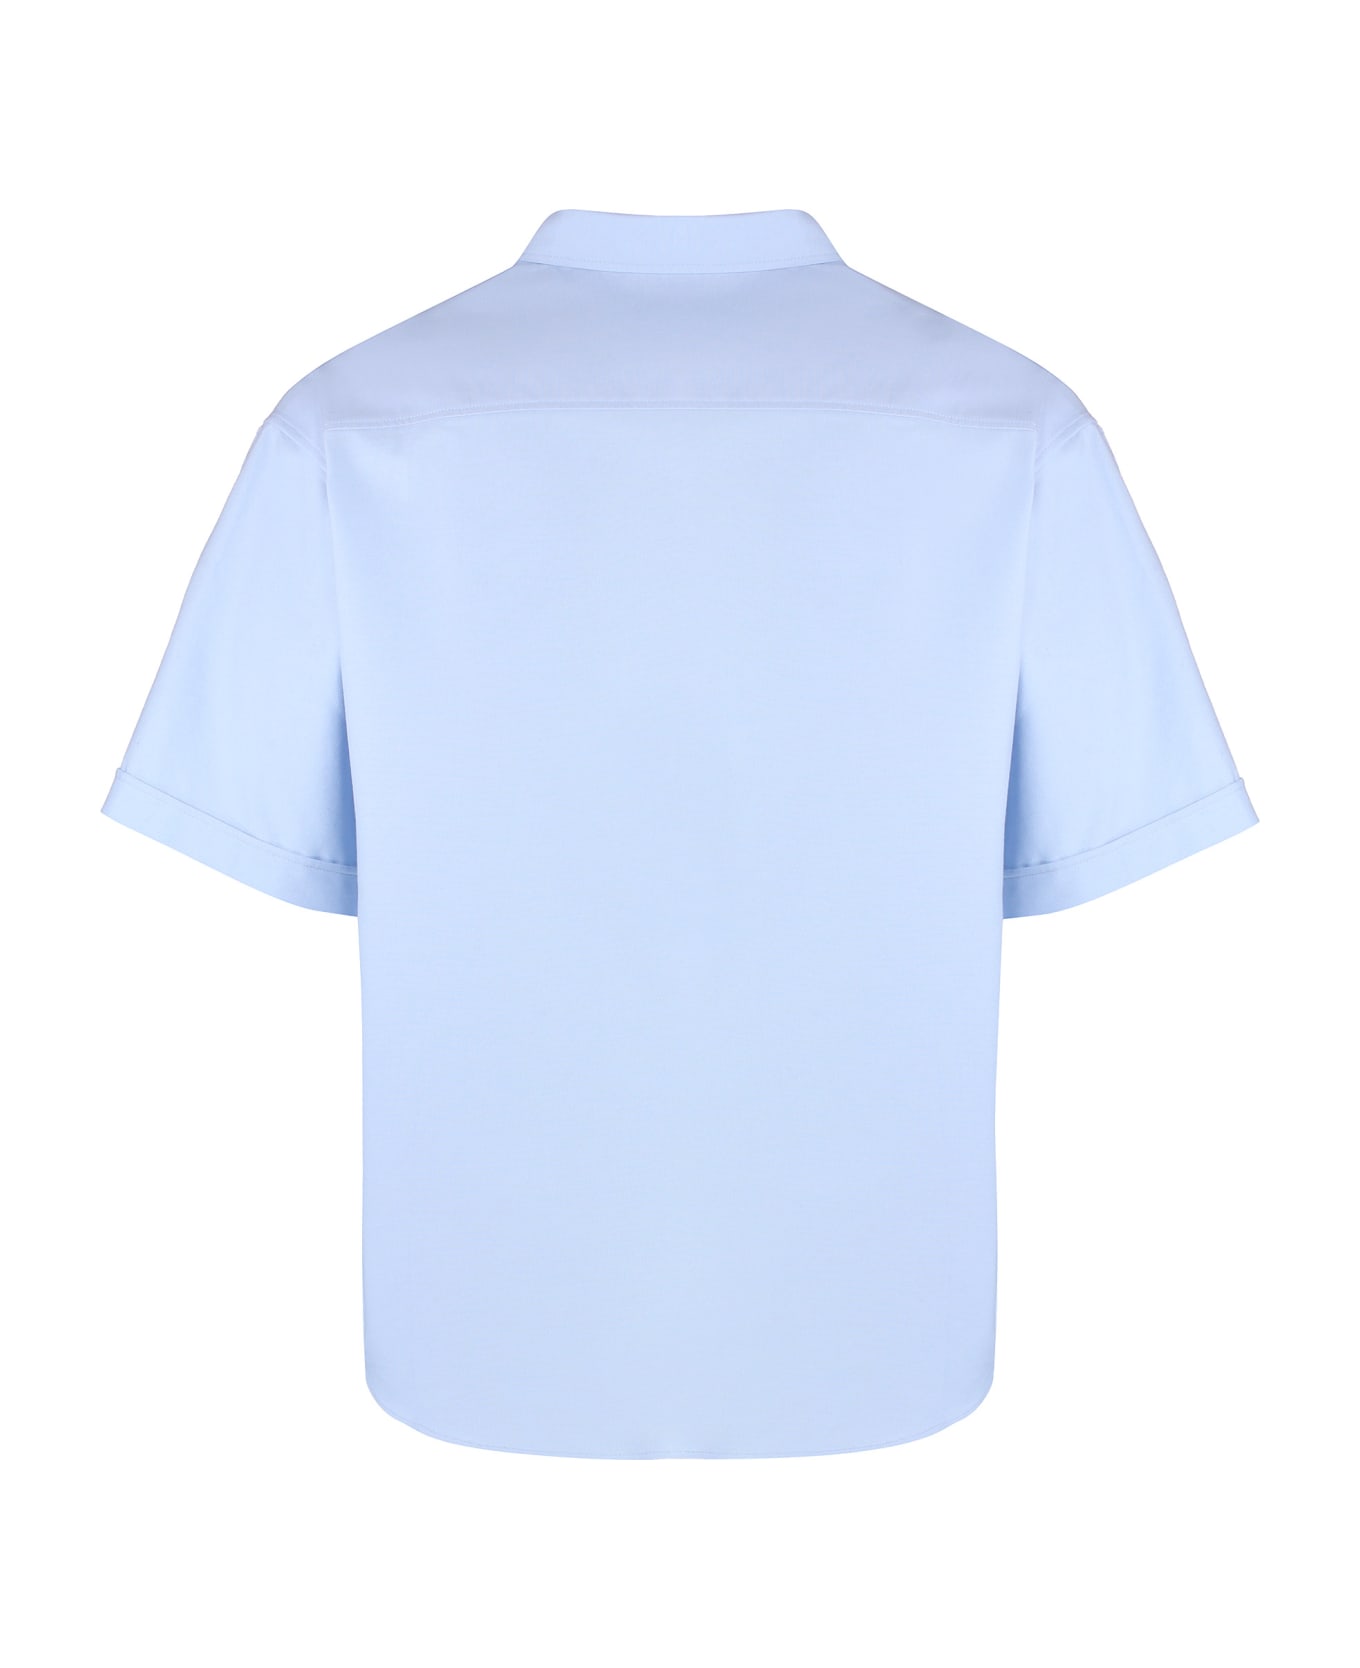 Ami Alexandre Mattiussi Short Sleeve Cotton Shirt - Light Blue